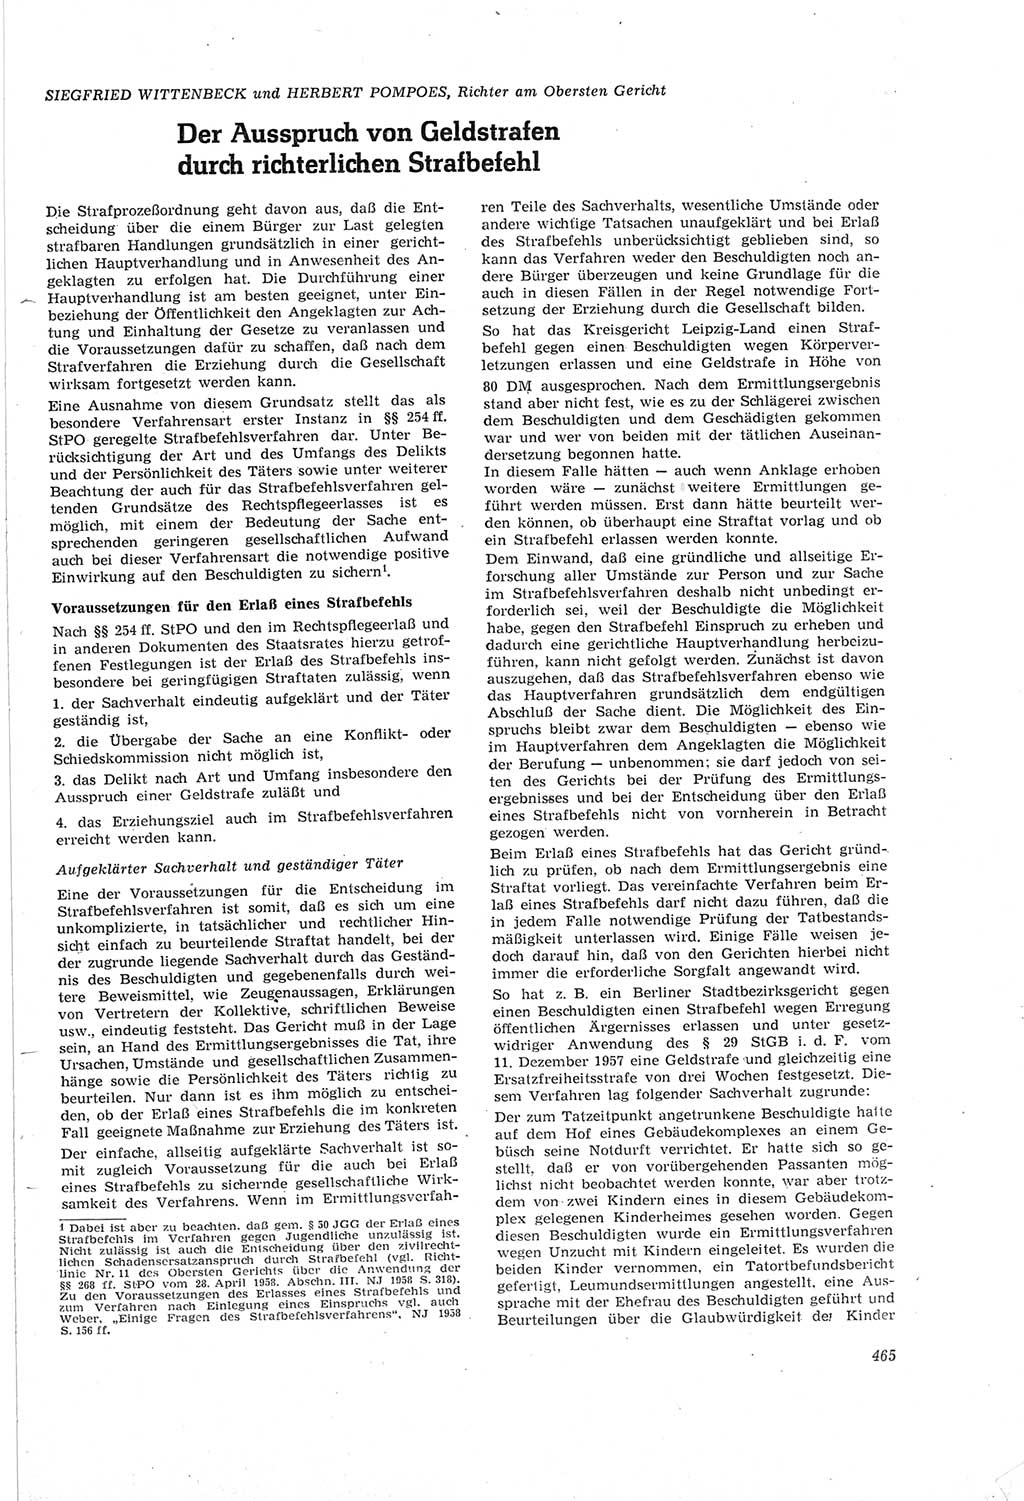 Neue Justiz (NJ), Zeitschrift für Recht und Rechtswissenschaft [Deutsche Demokratische Republik (DDR)], 18. Jahrgang 1964, Seite 465 (NJ DDR 1964, S. 465)